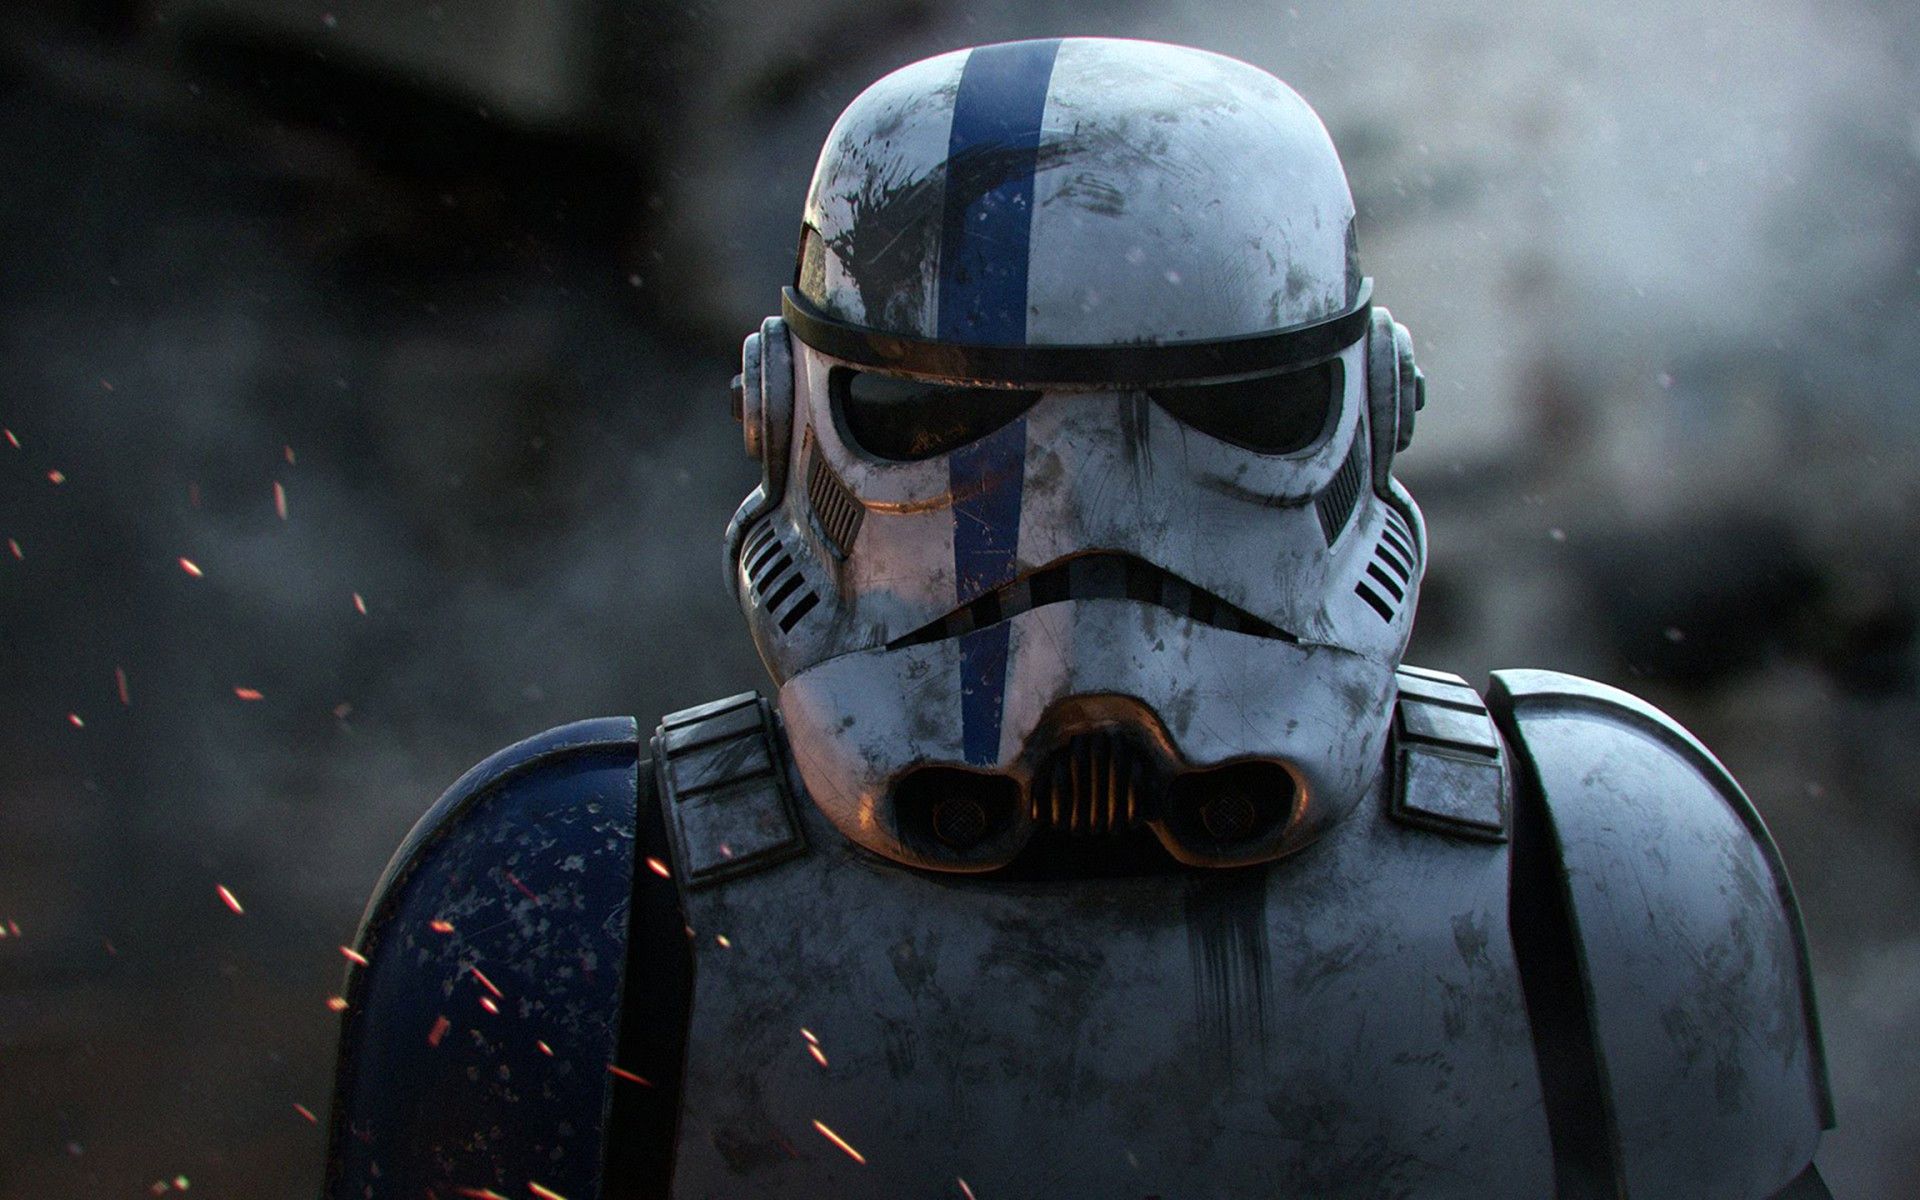 Lovely Wallpaper Stormtrooper Blue Stripe Helmet. Stormtrooper, Blue stripes, Star wars wallpaper